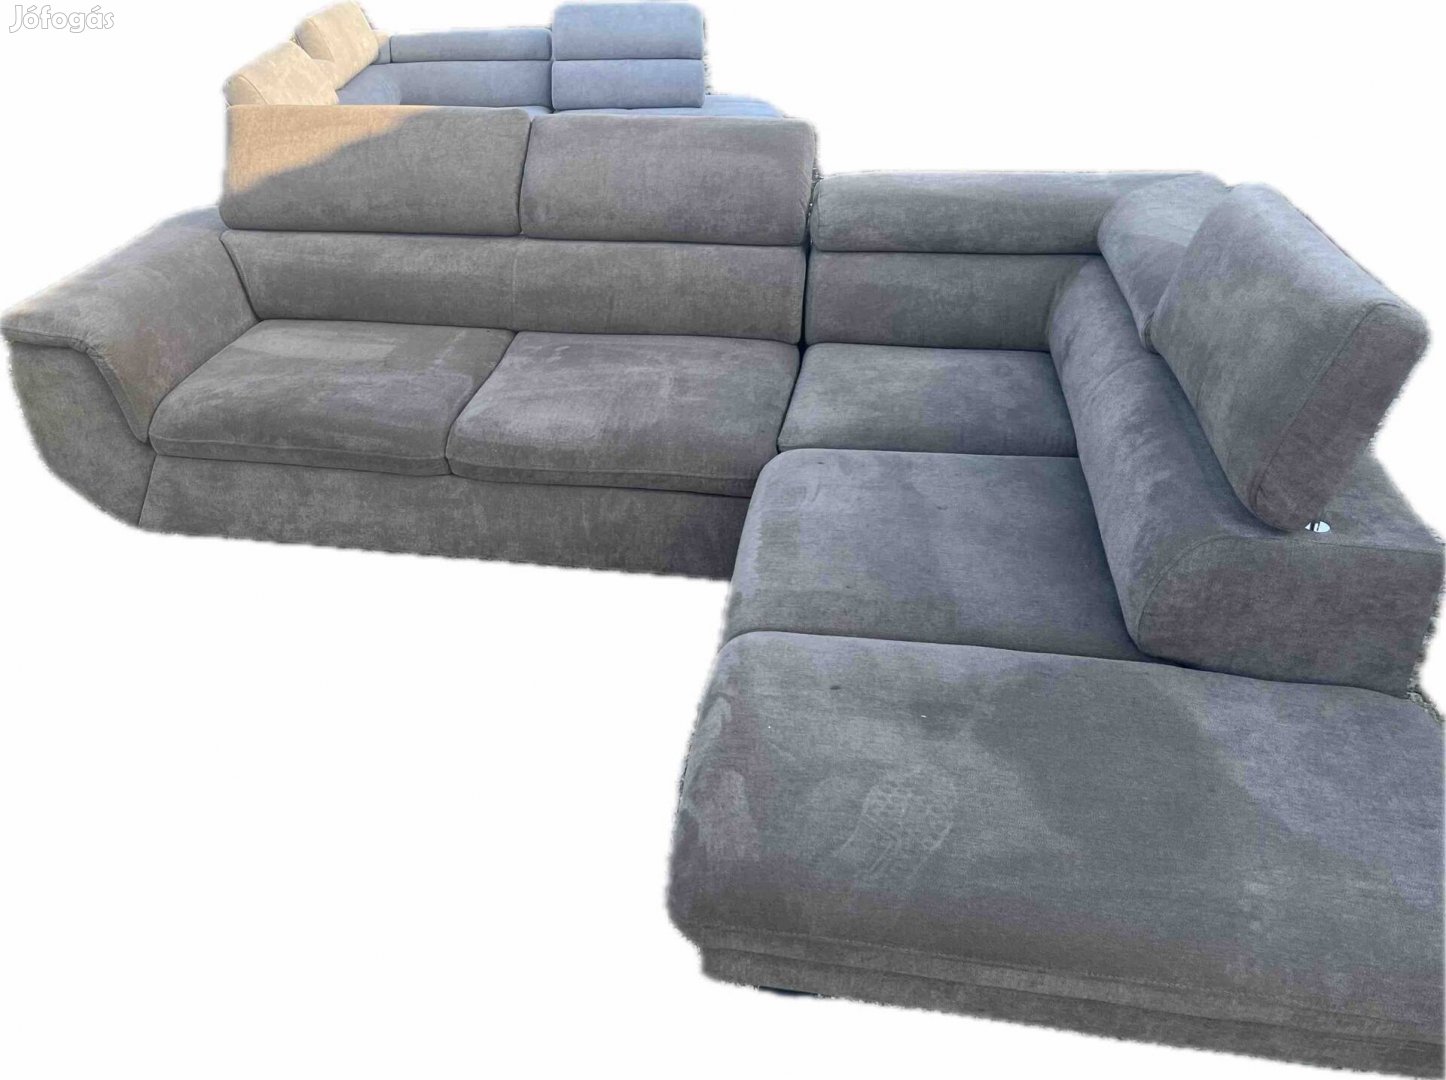 Új Relax kanapé eladó -10% kedvezmény csak a héten